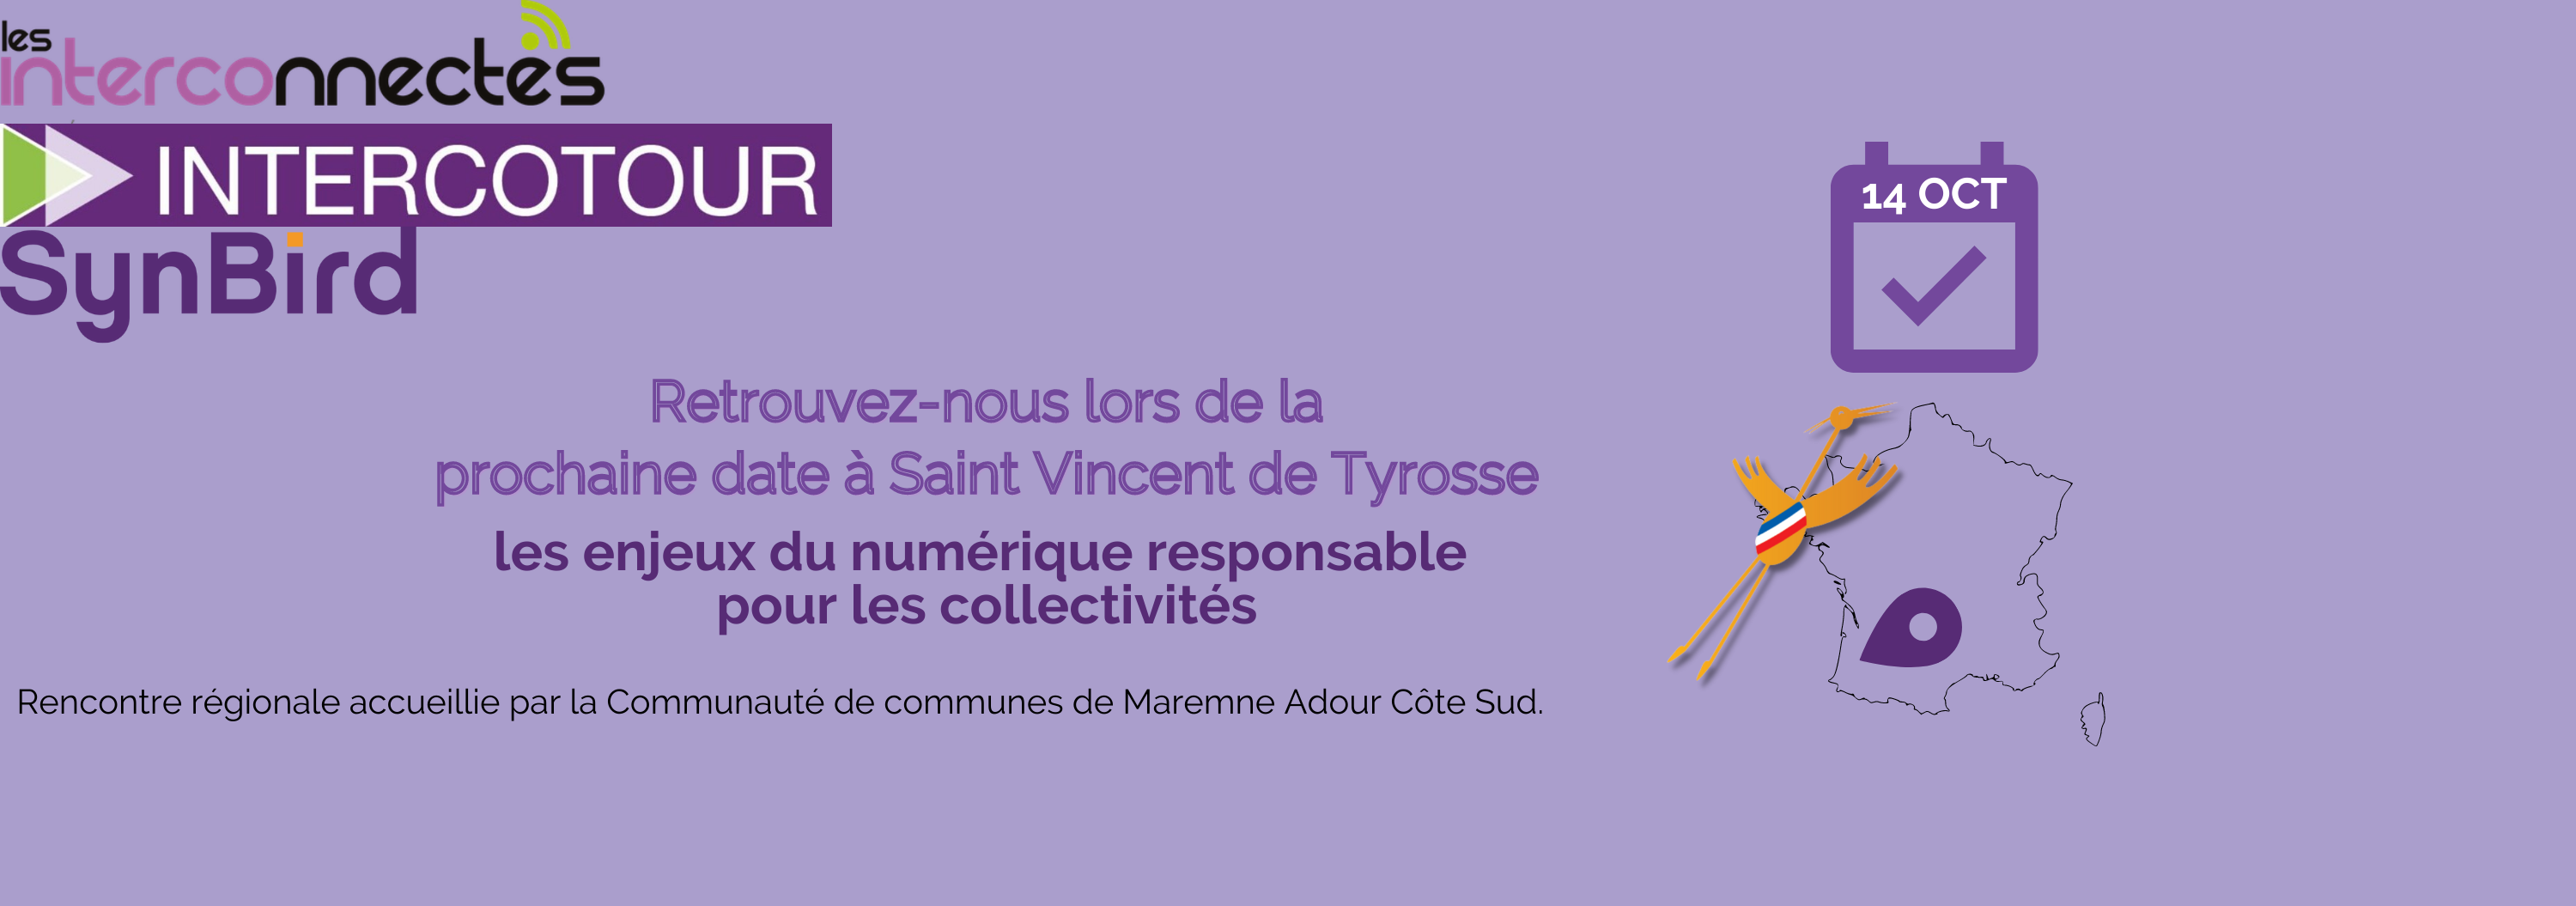 IntercoTour Nouvelle Aquitaine le 14 octobre : Journée Numérique responsable